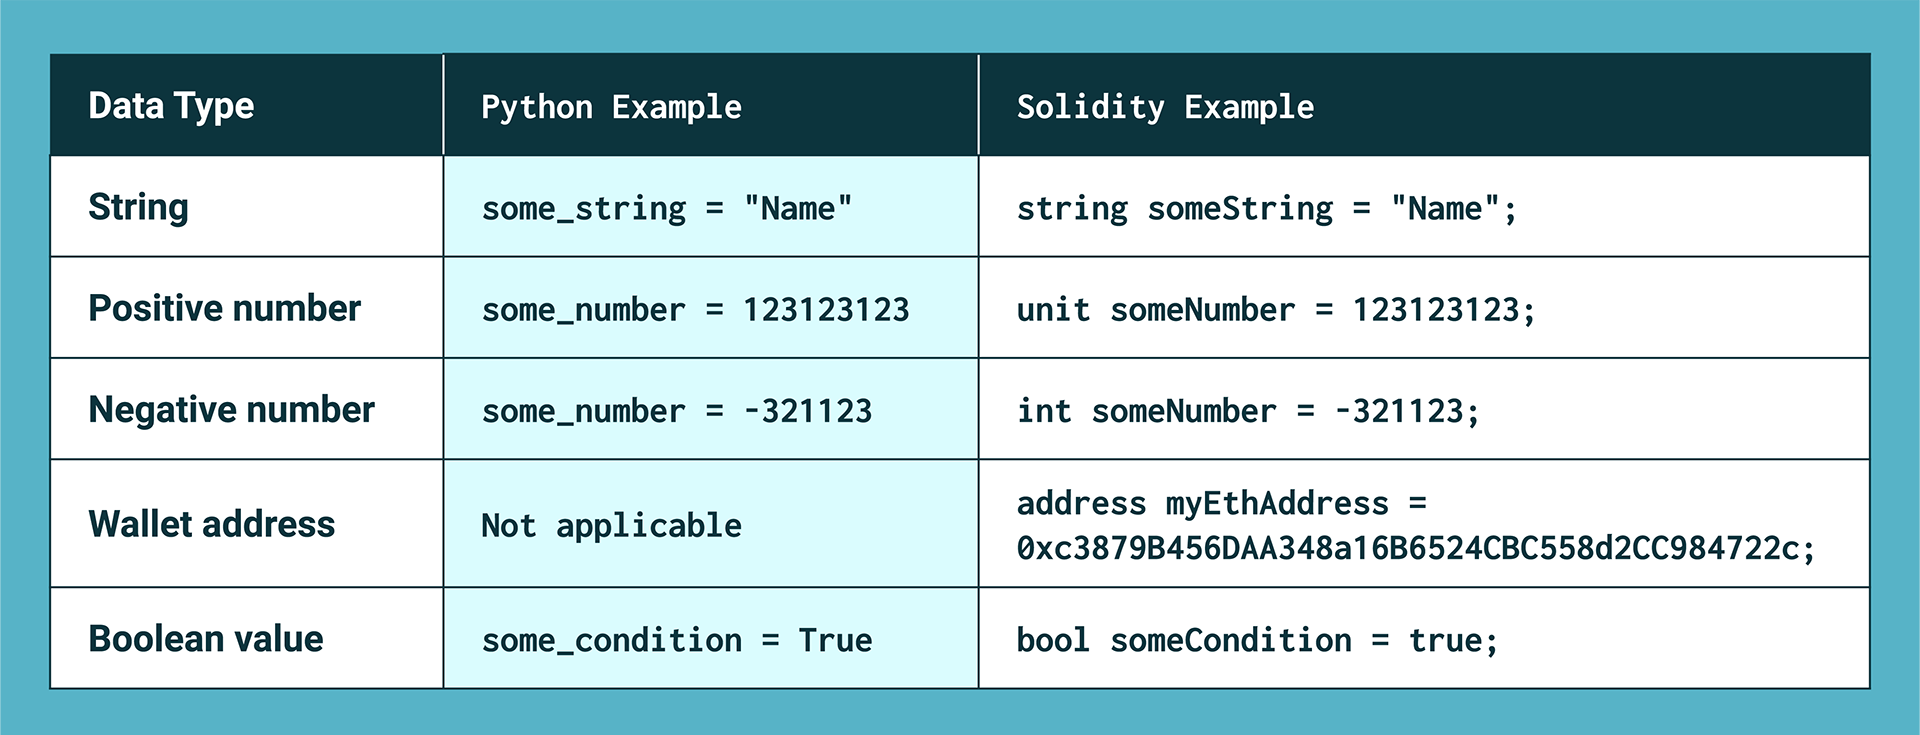 Python vs. Solidity data types